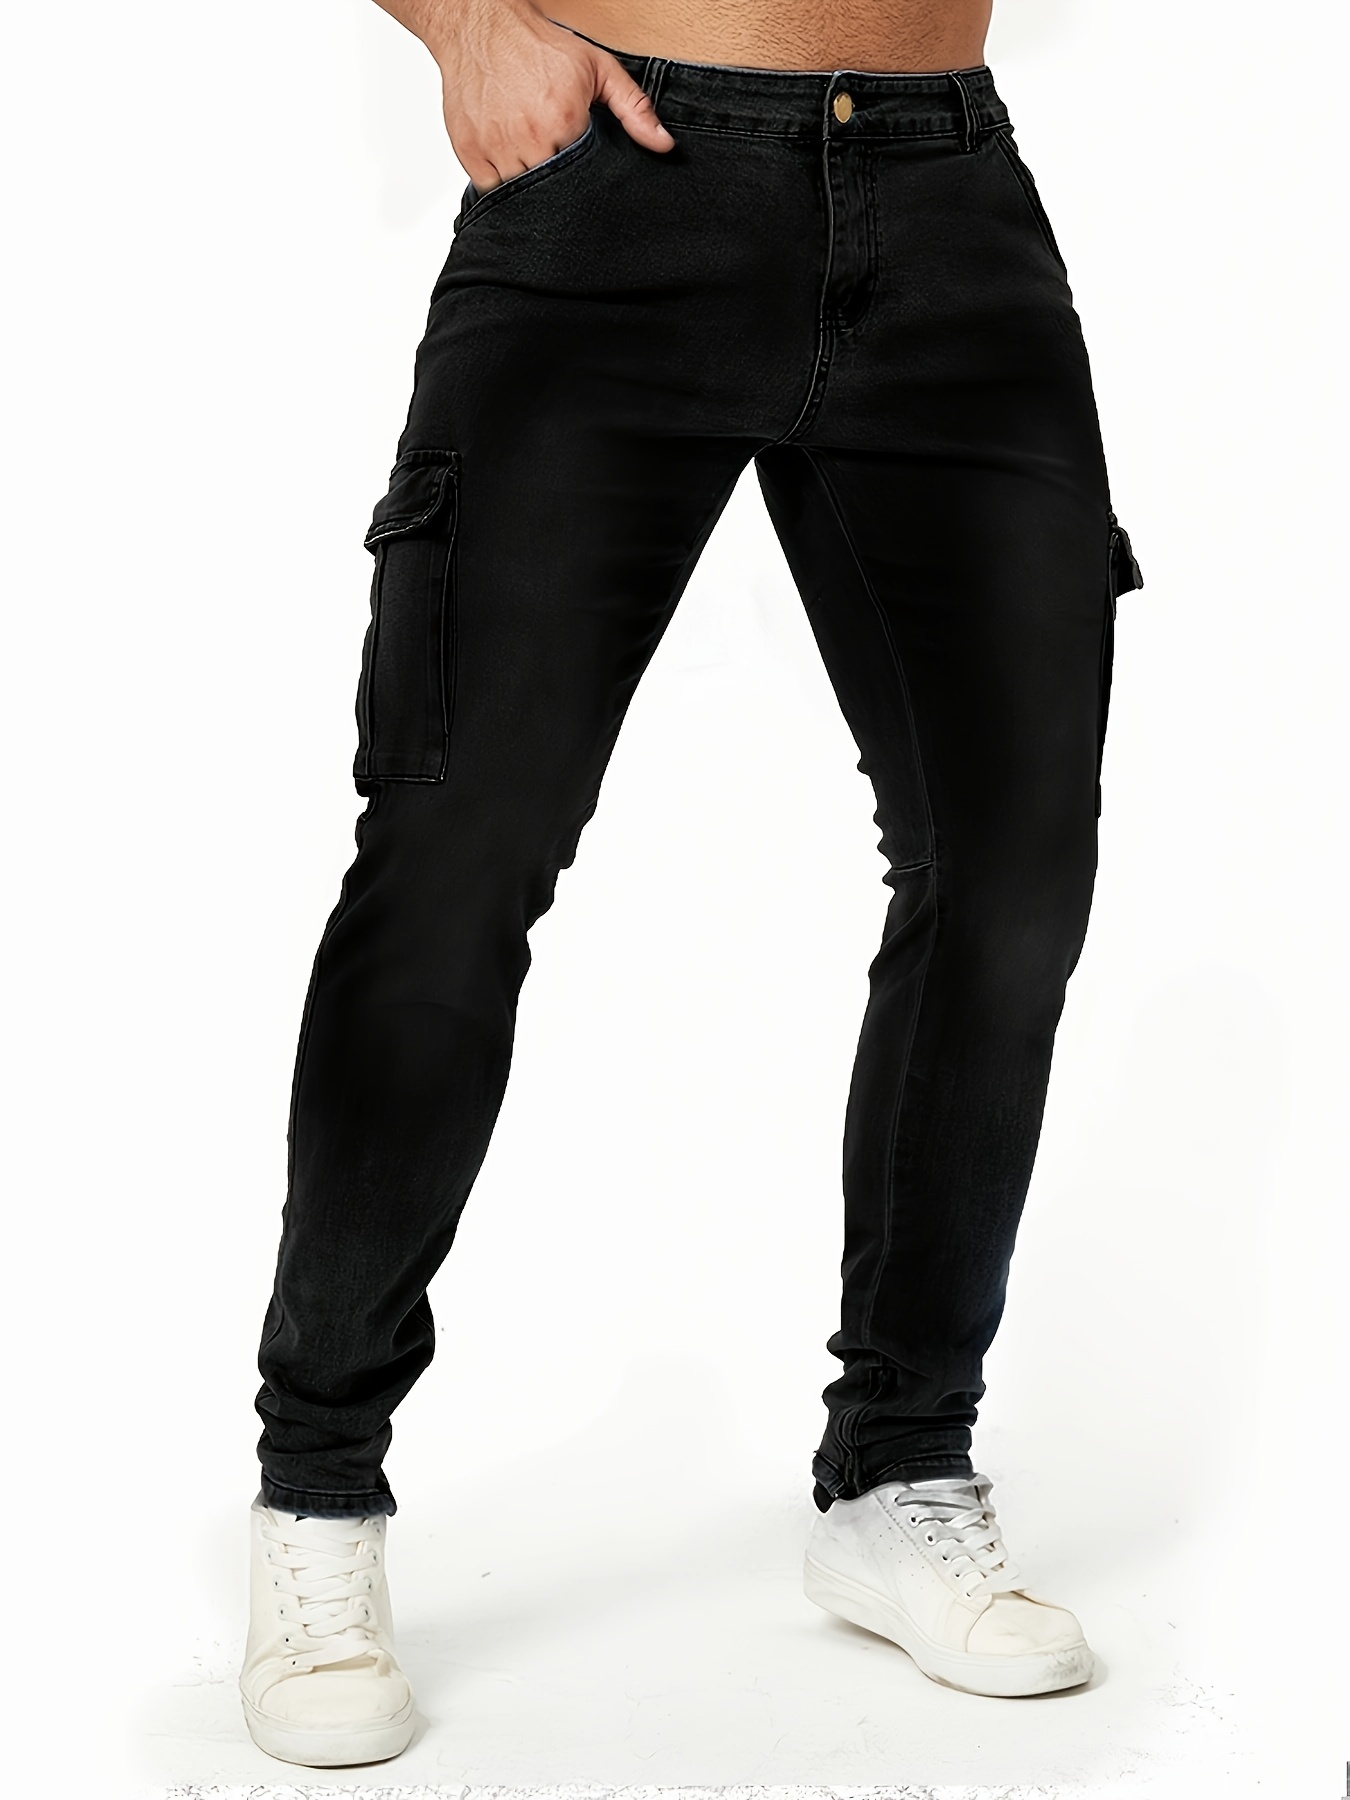 Classic Design Multi Flap Pockets Cargo Pants,men's Loose Fit